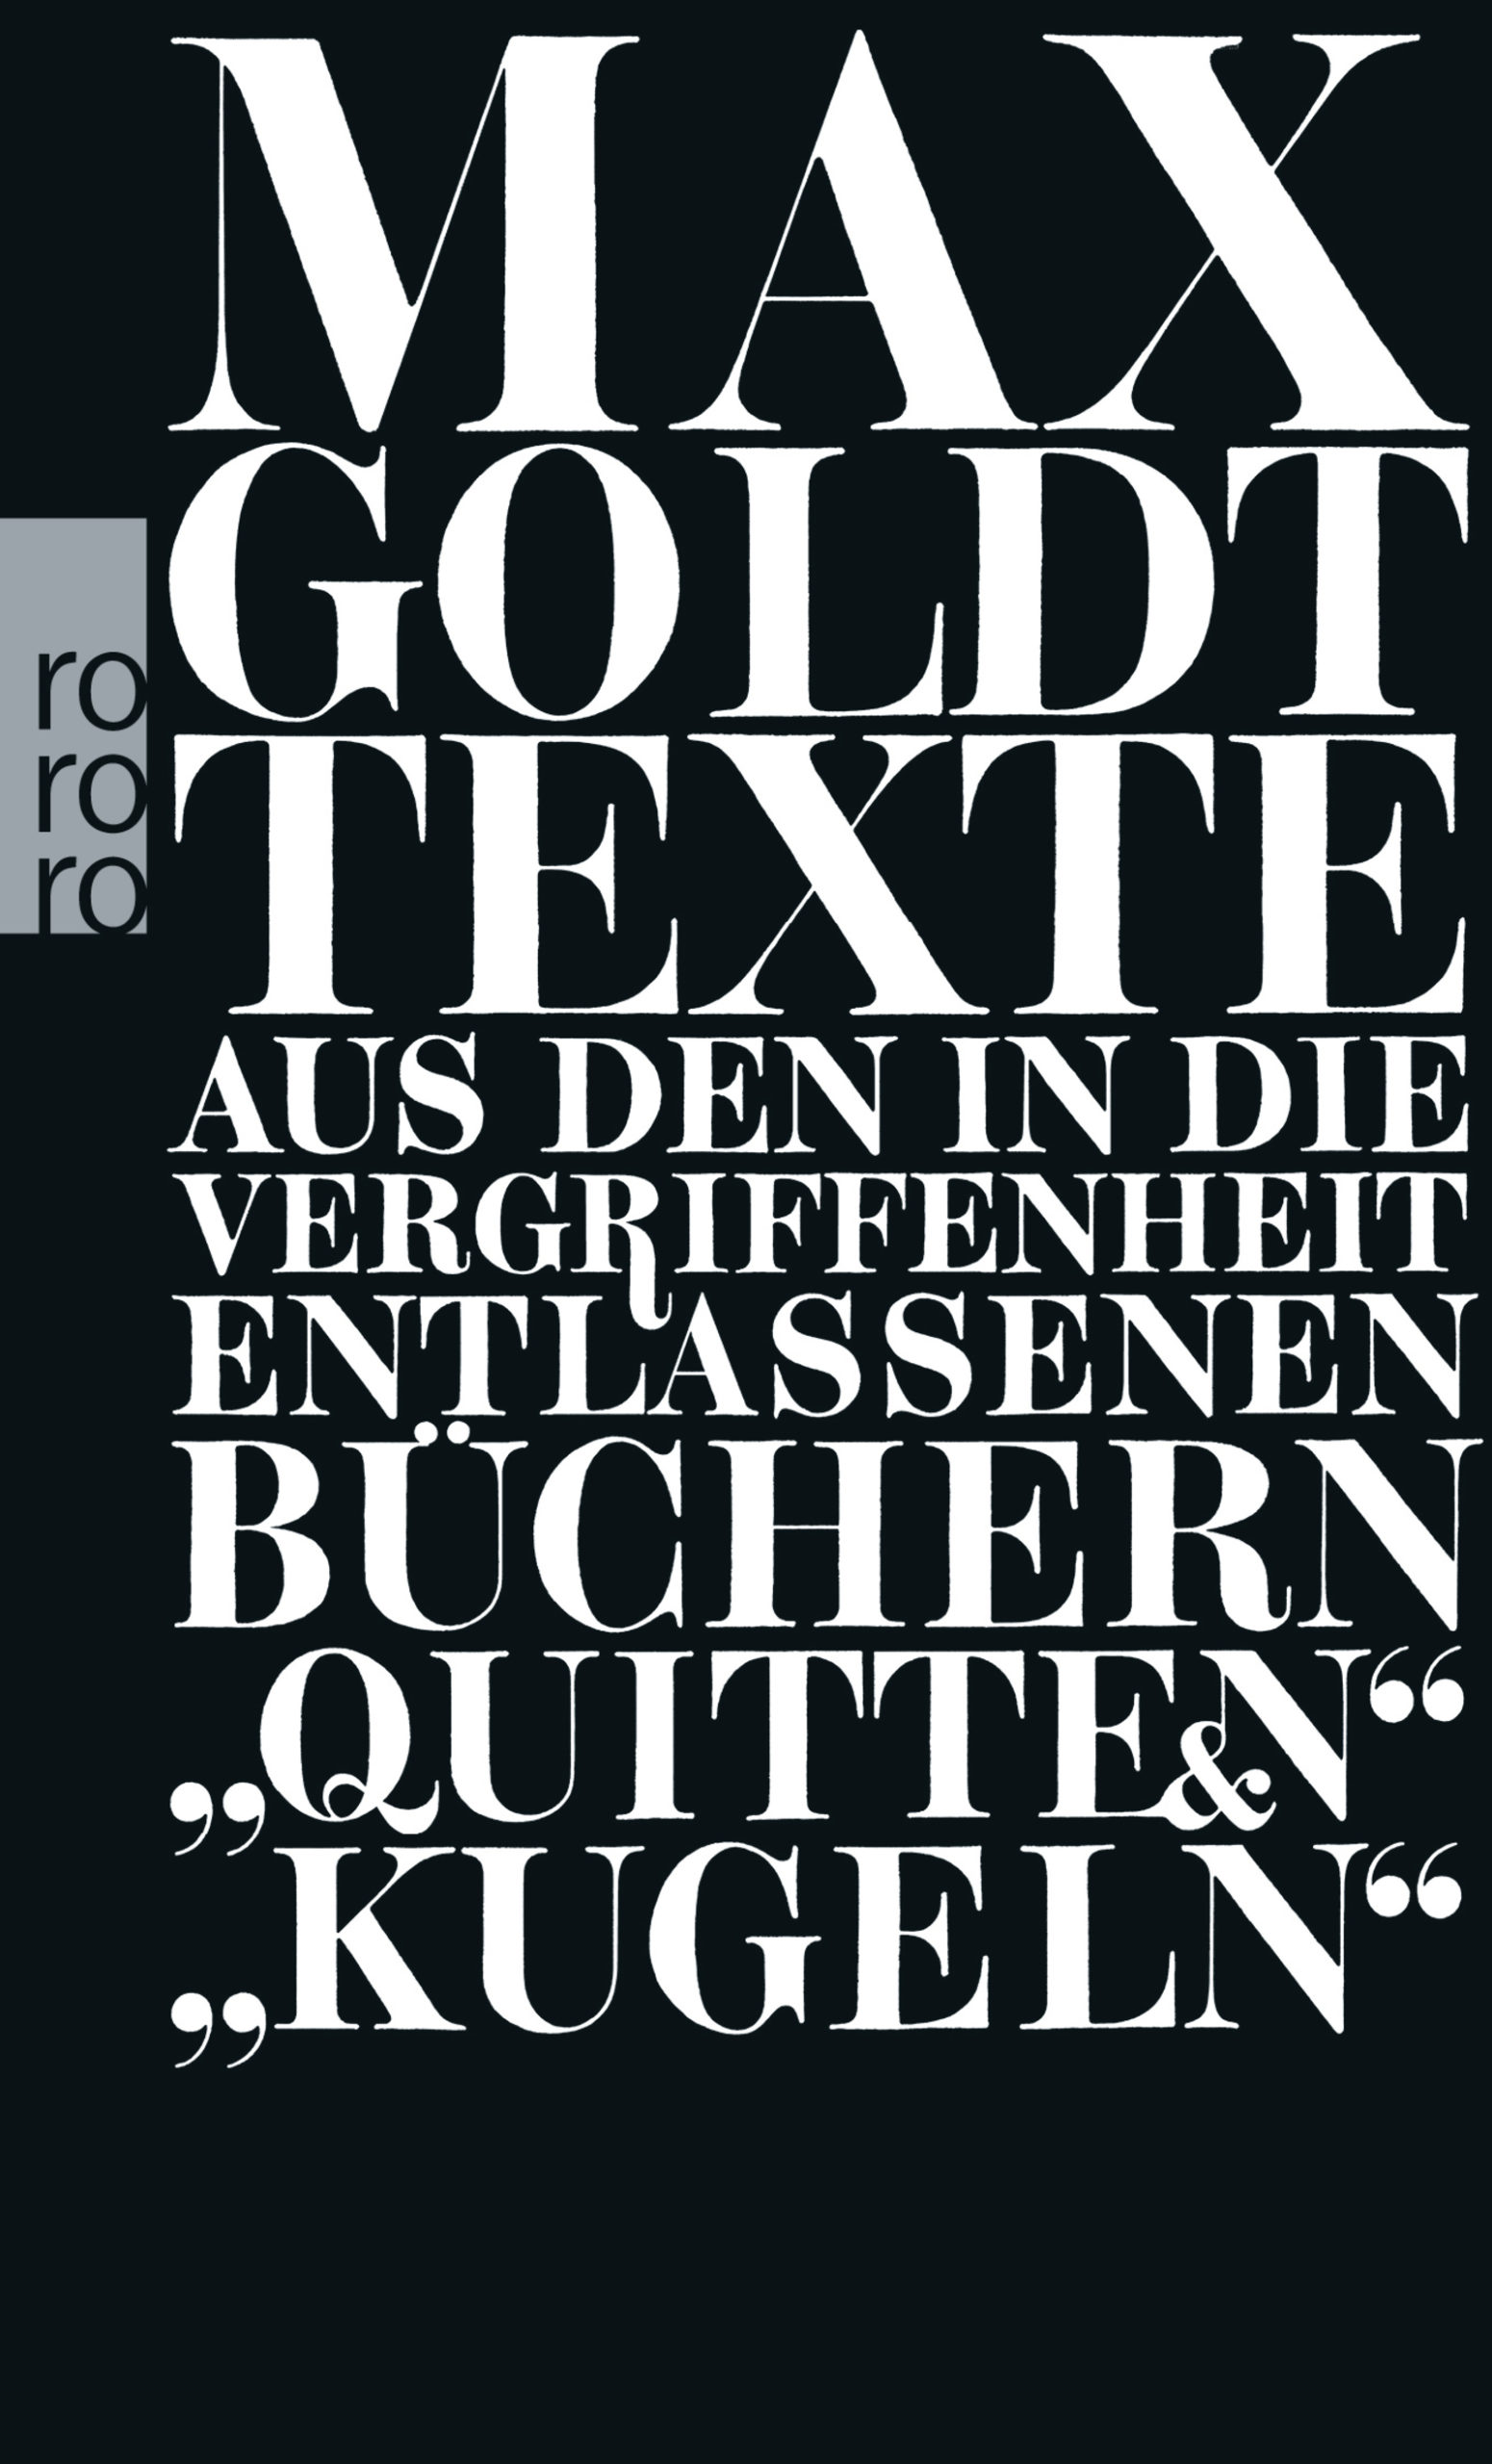 Max Goldt: Texte aus den in die Vergriffenheit entlassenen Büchern "Quitten" und "Kugeln"